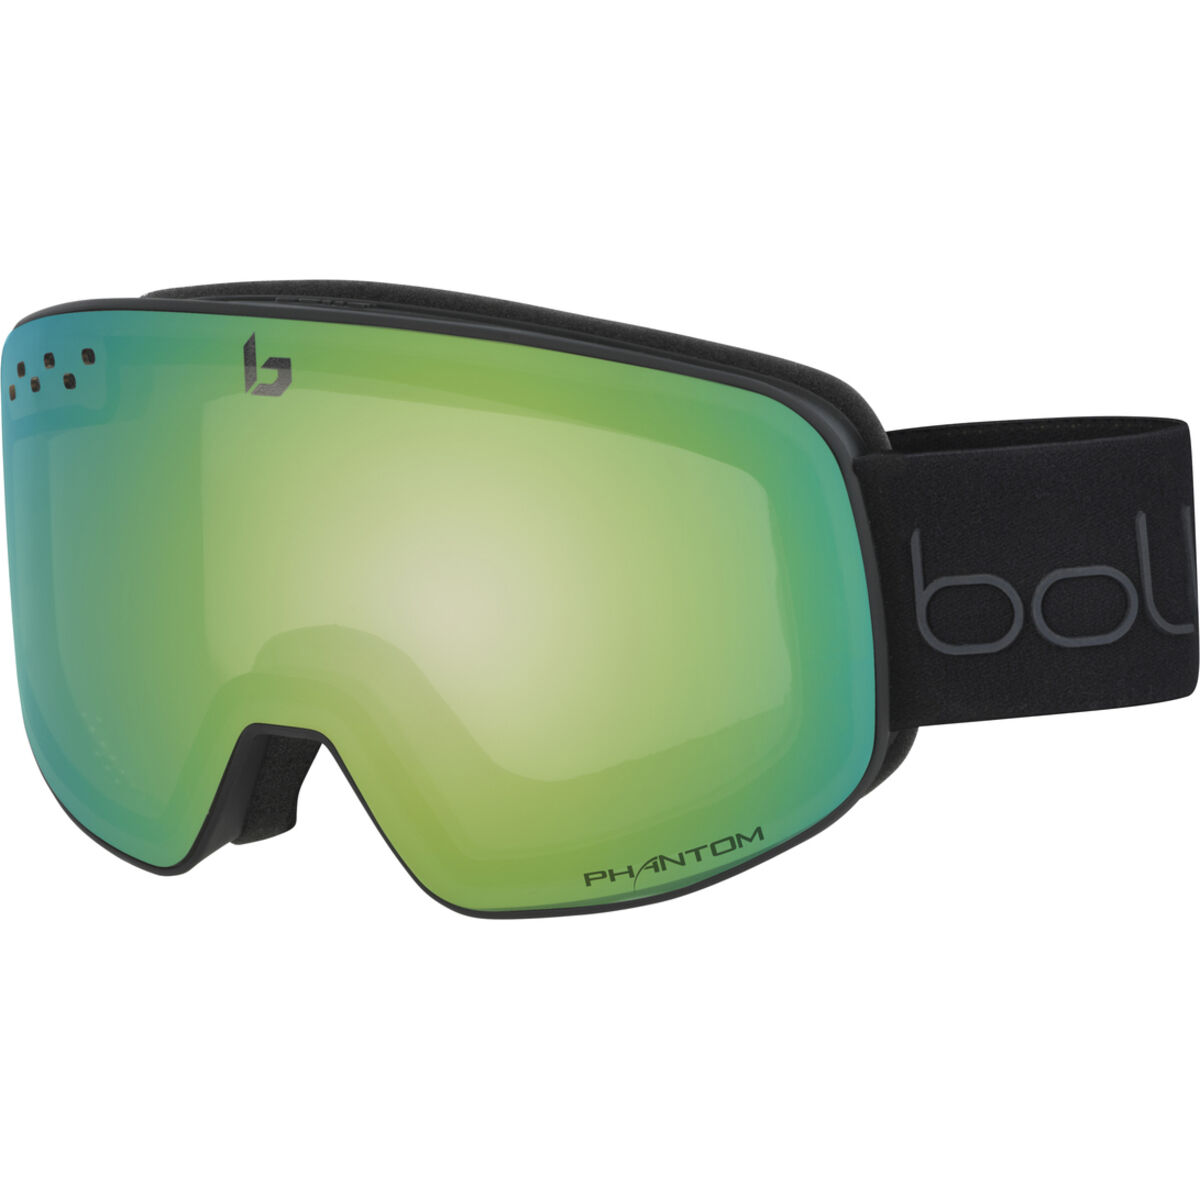 Bollé NEVADA Snow Goggles - UV Protection